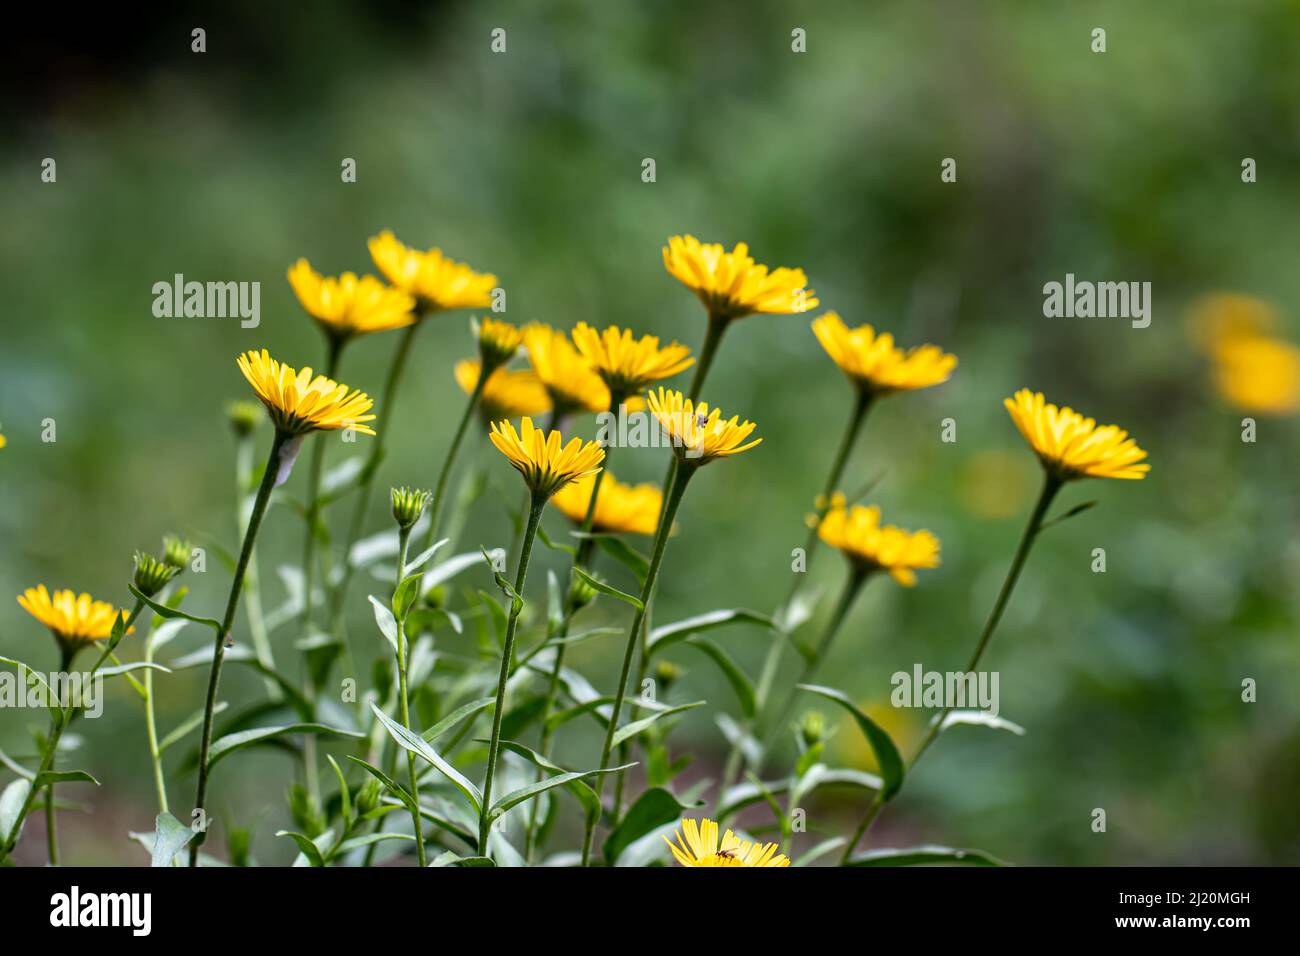 Buphthalmum salicifolium flower growing in mountains, close up shoot Stock Photo